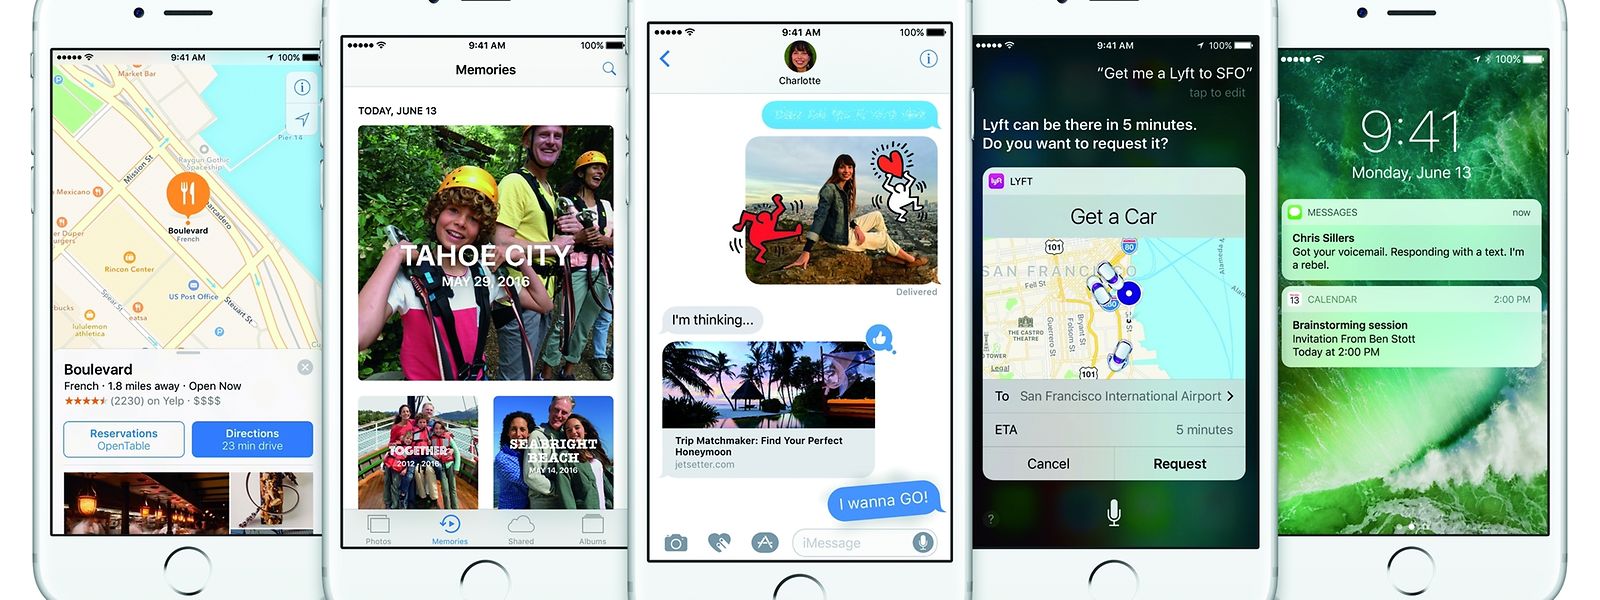 Apples neues iOS 10 bringt viele neue Funktionen, darunter eine verbesserte Siri, mehr Möglichkeiten für bunte Textnachrichten und mehr Benachrichtigungen auf dem Home-Screen. 
